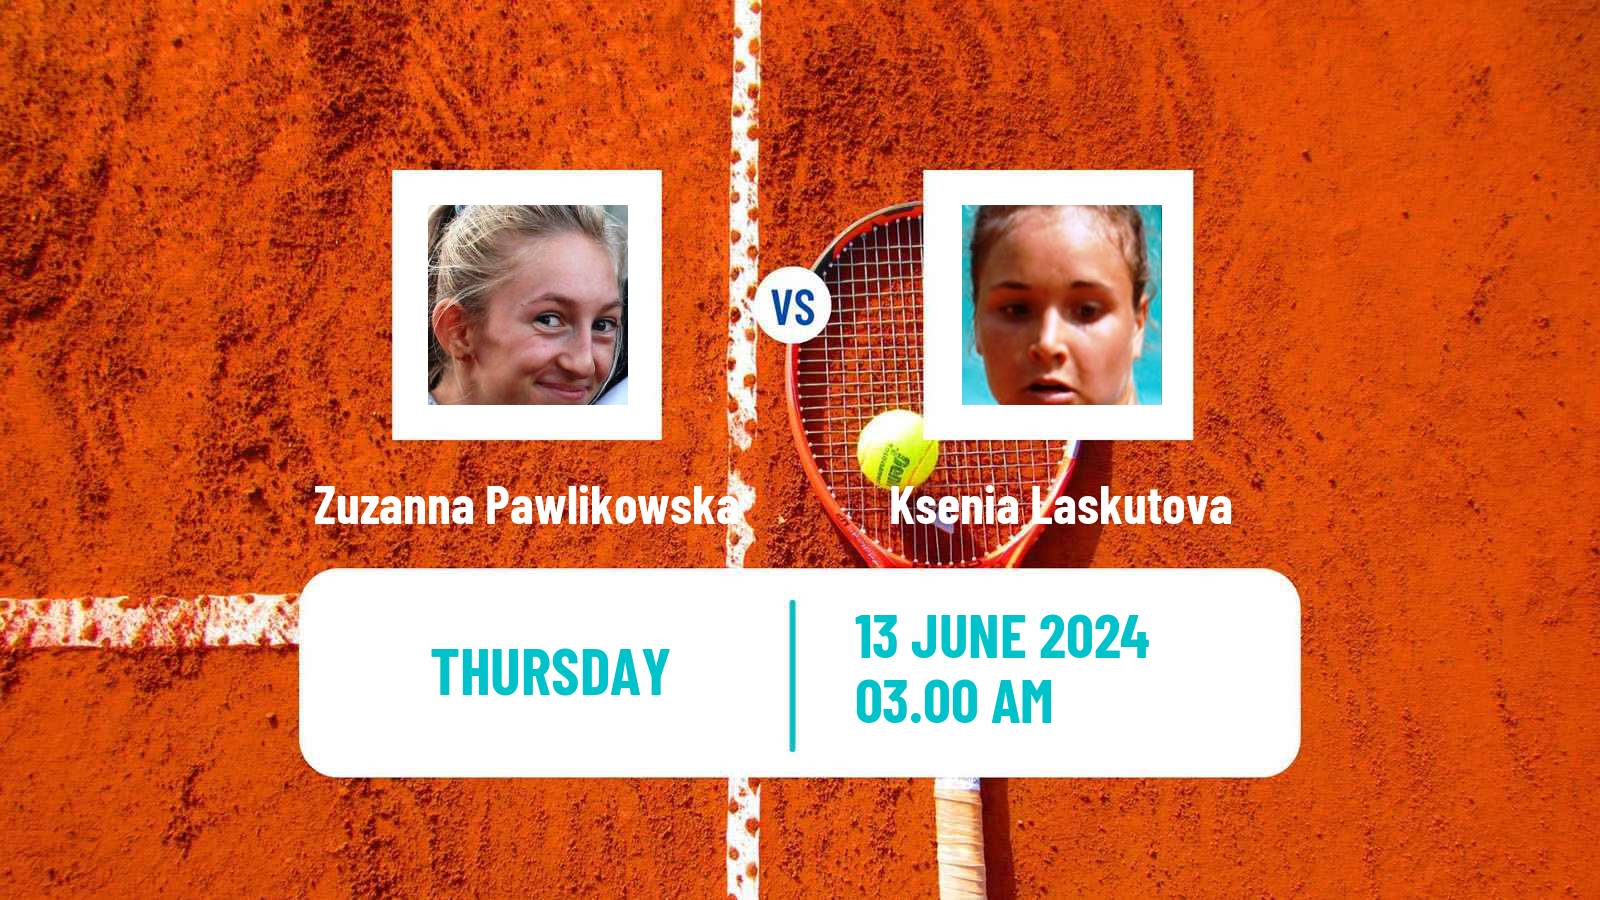 Tennis ITF W15 Kursumlijska Banja 7 Women Zuzanna Pawlikowska - Ksenia Laskutova